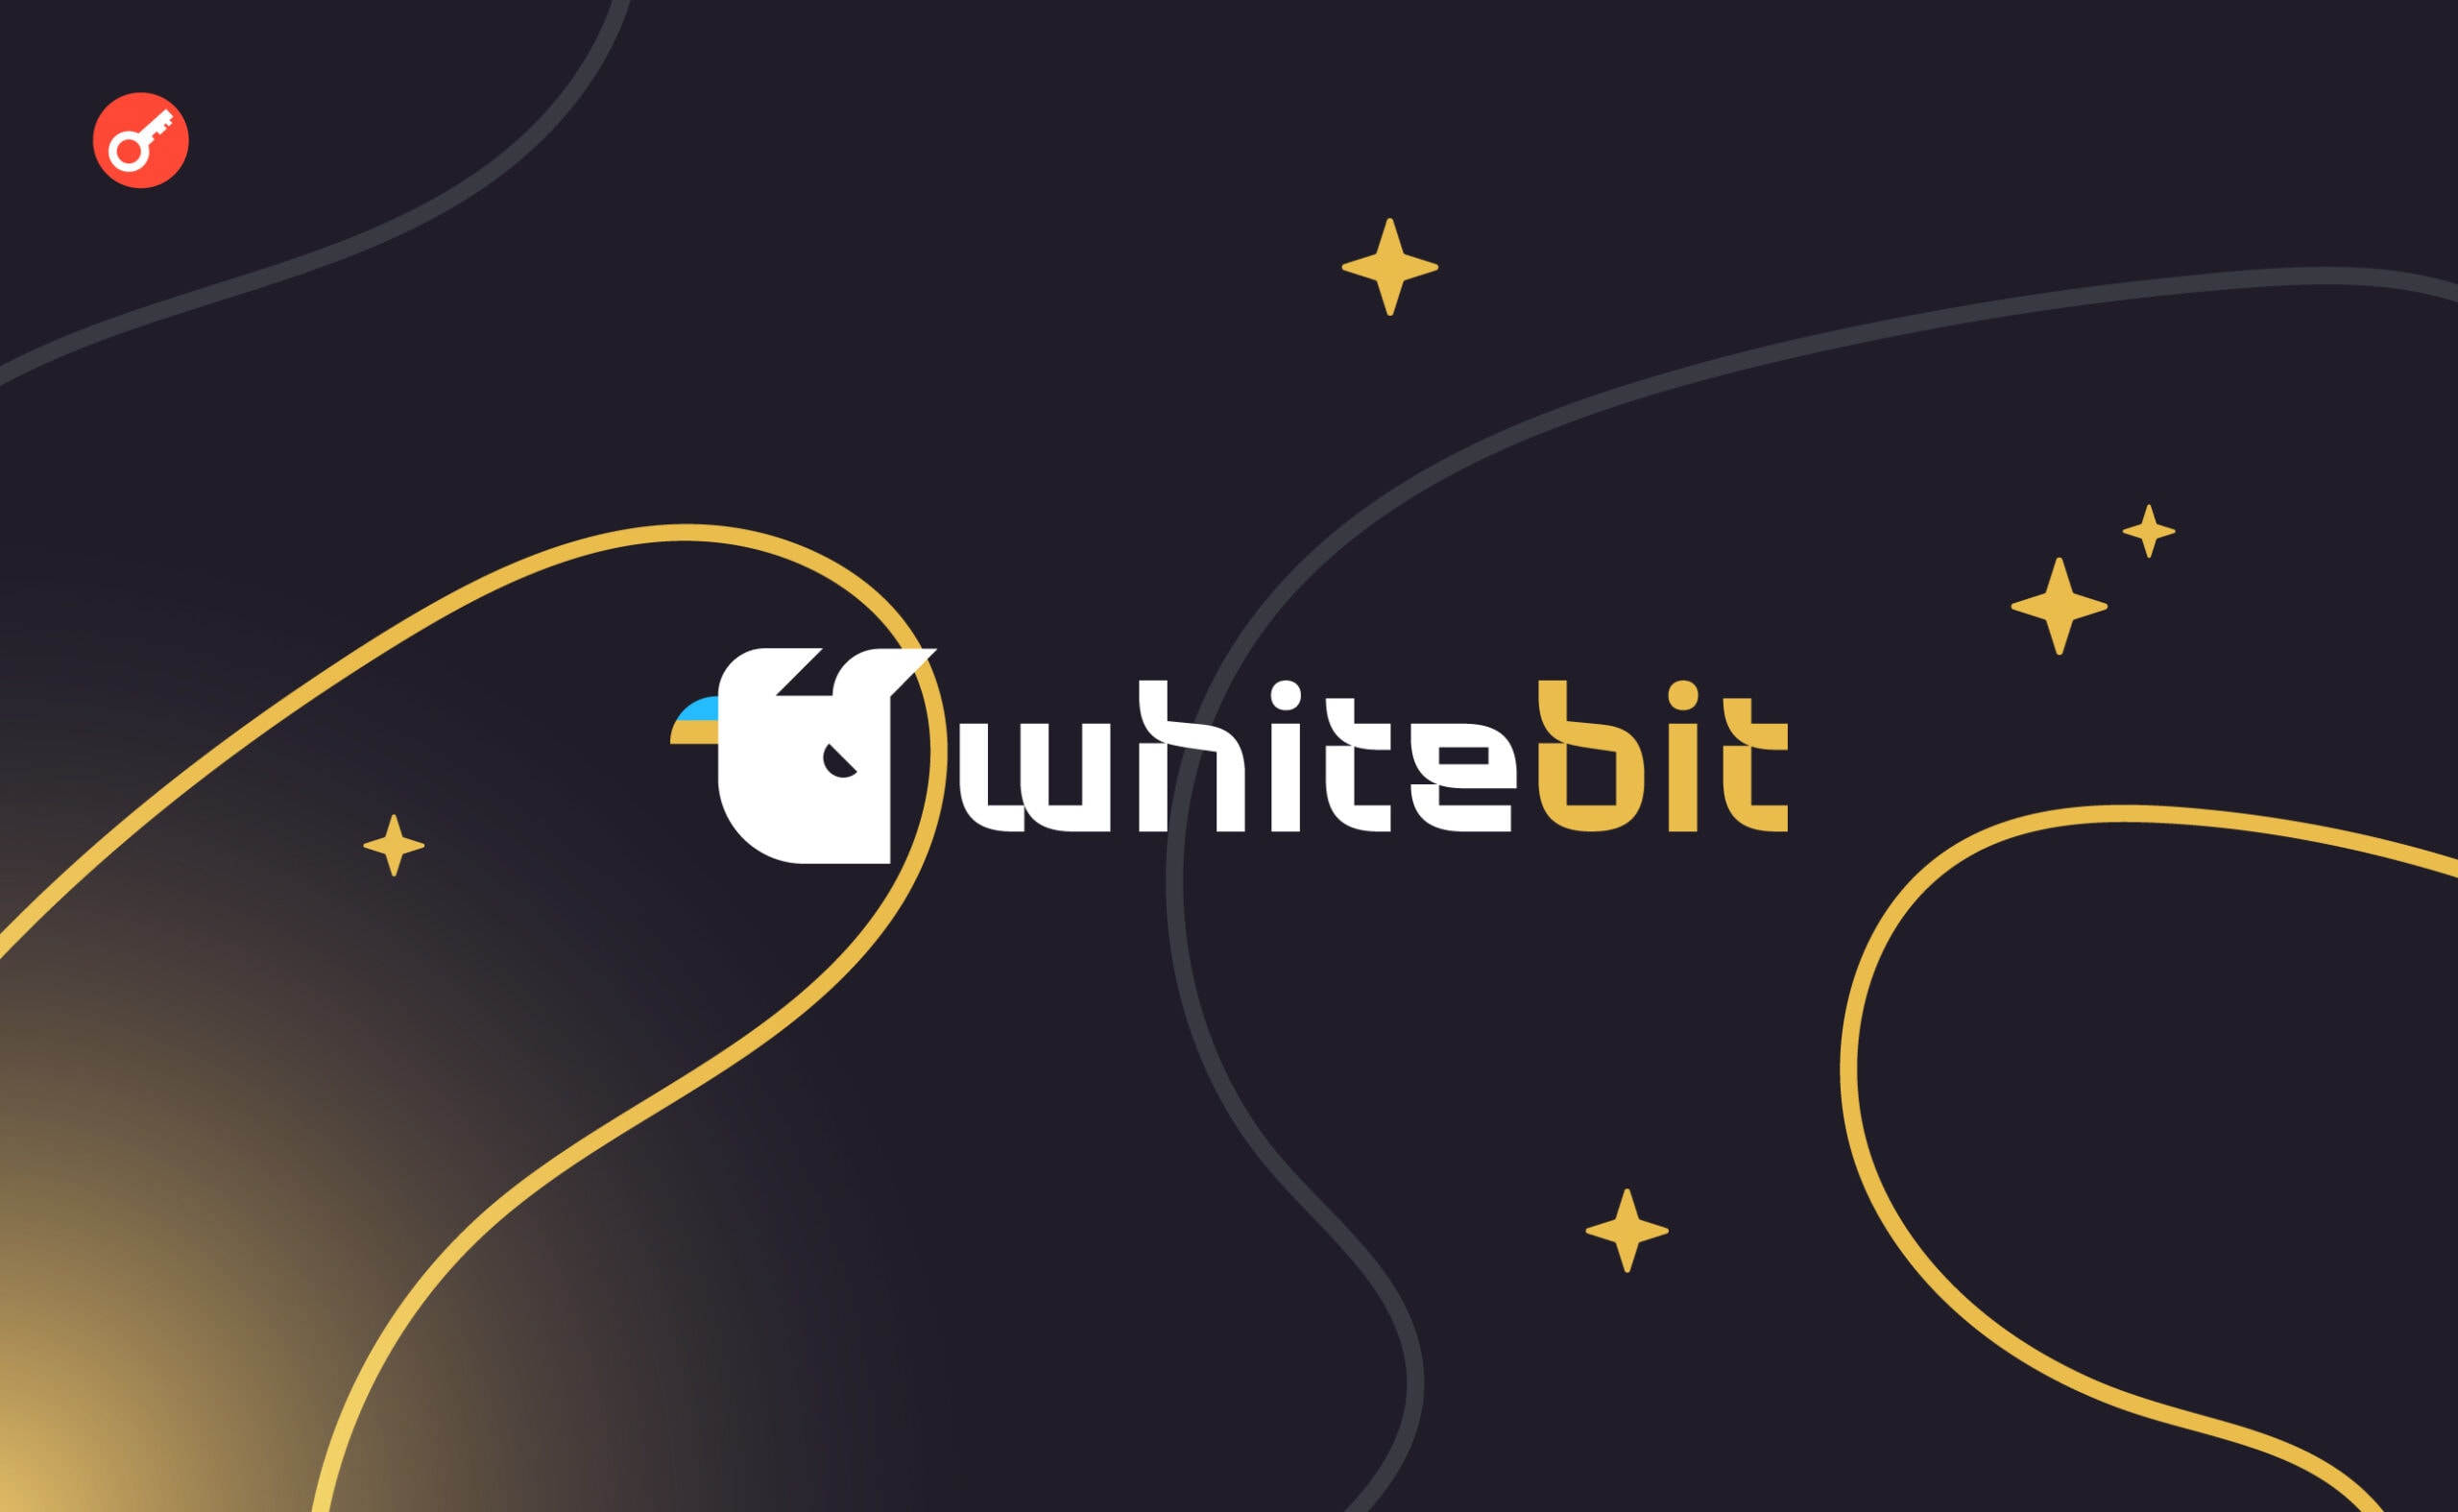 WhiteBIT запустила 7 нових пар для торгівлі ф’ючерсами. Головний колаж новини.